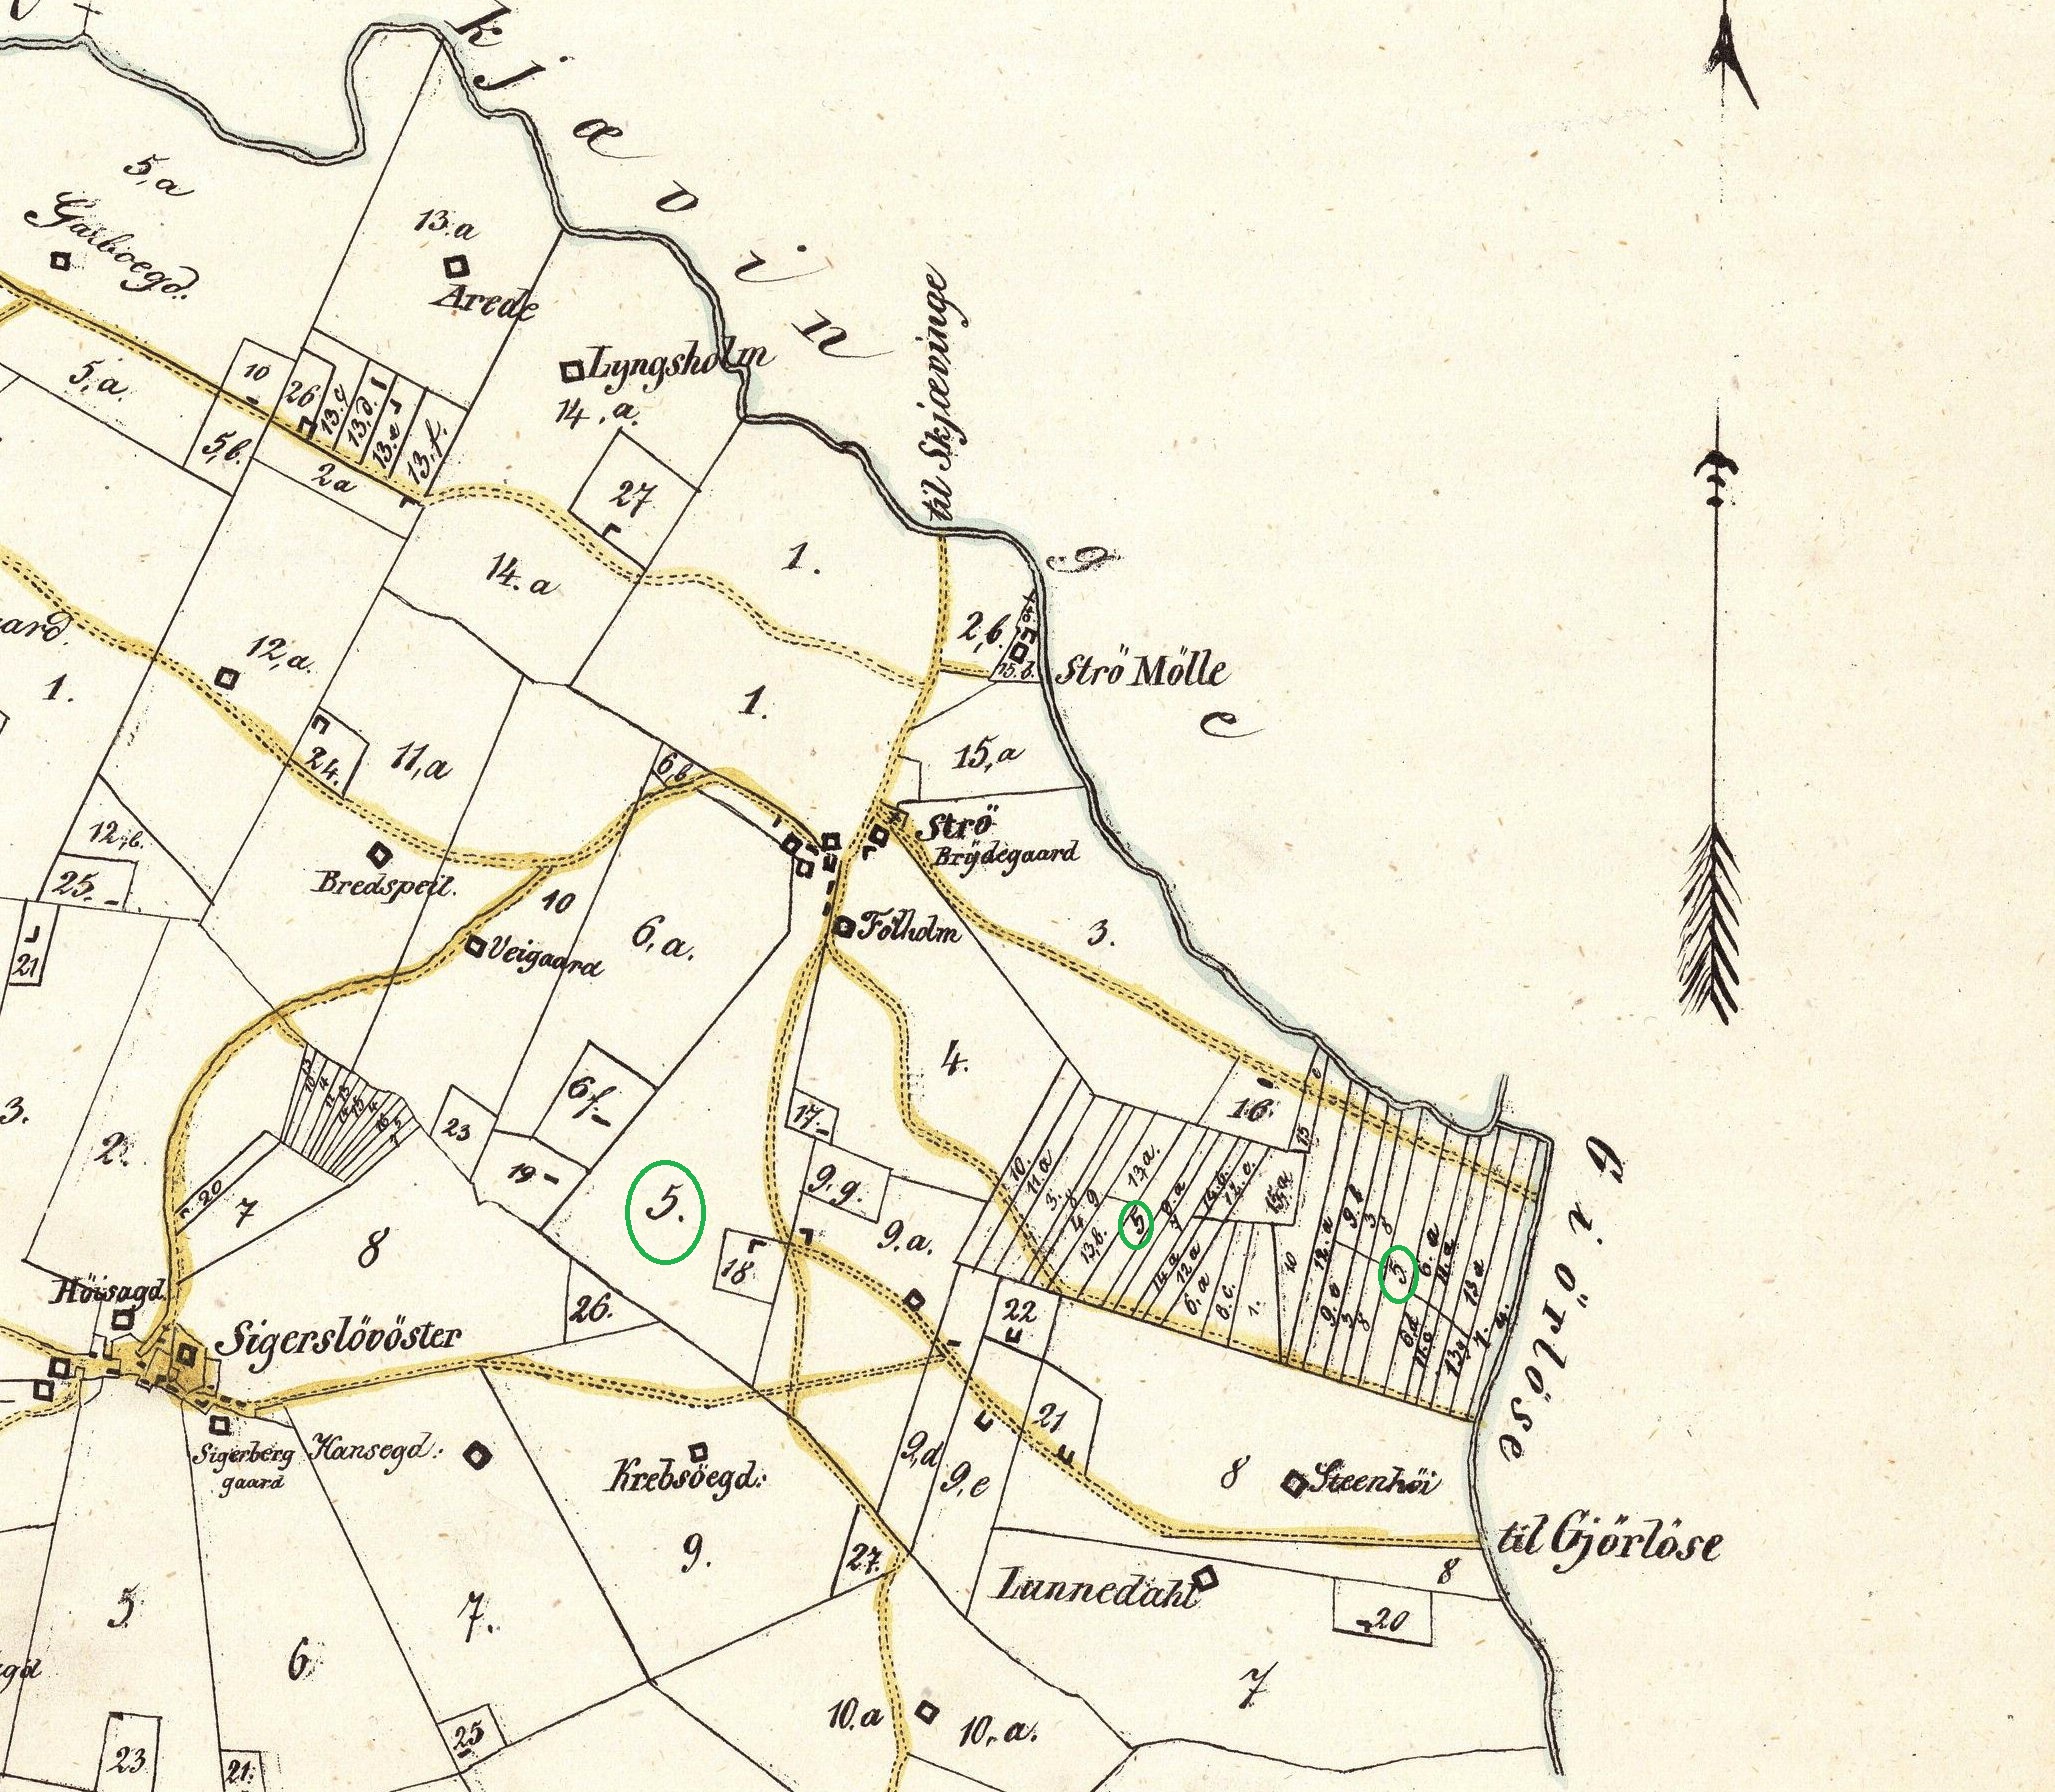 Hyllegaards arealer 1850